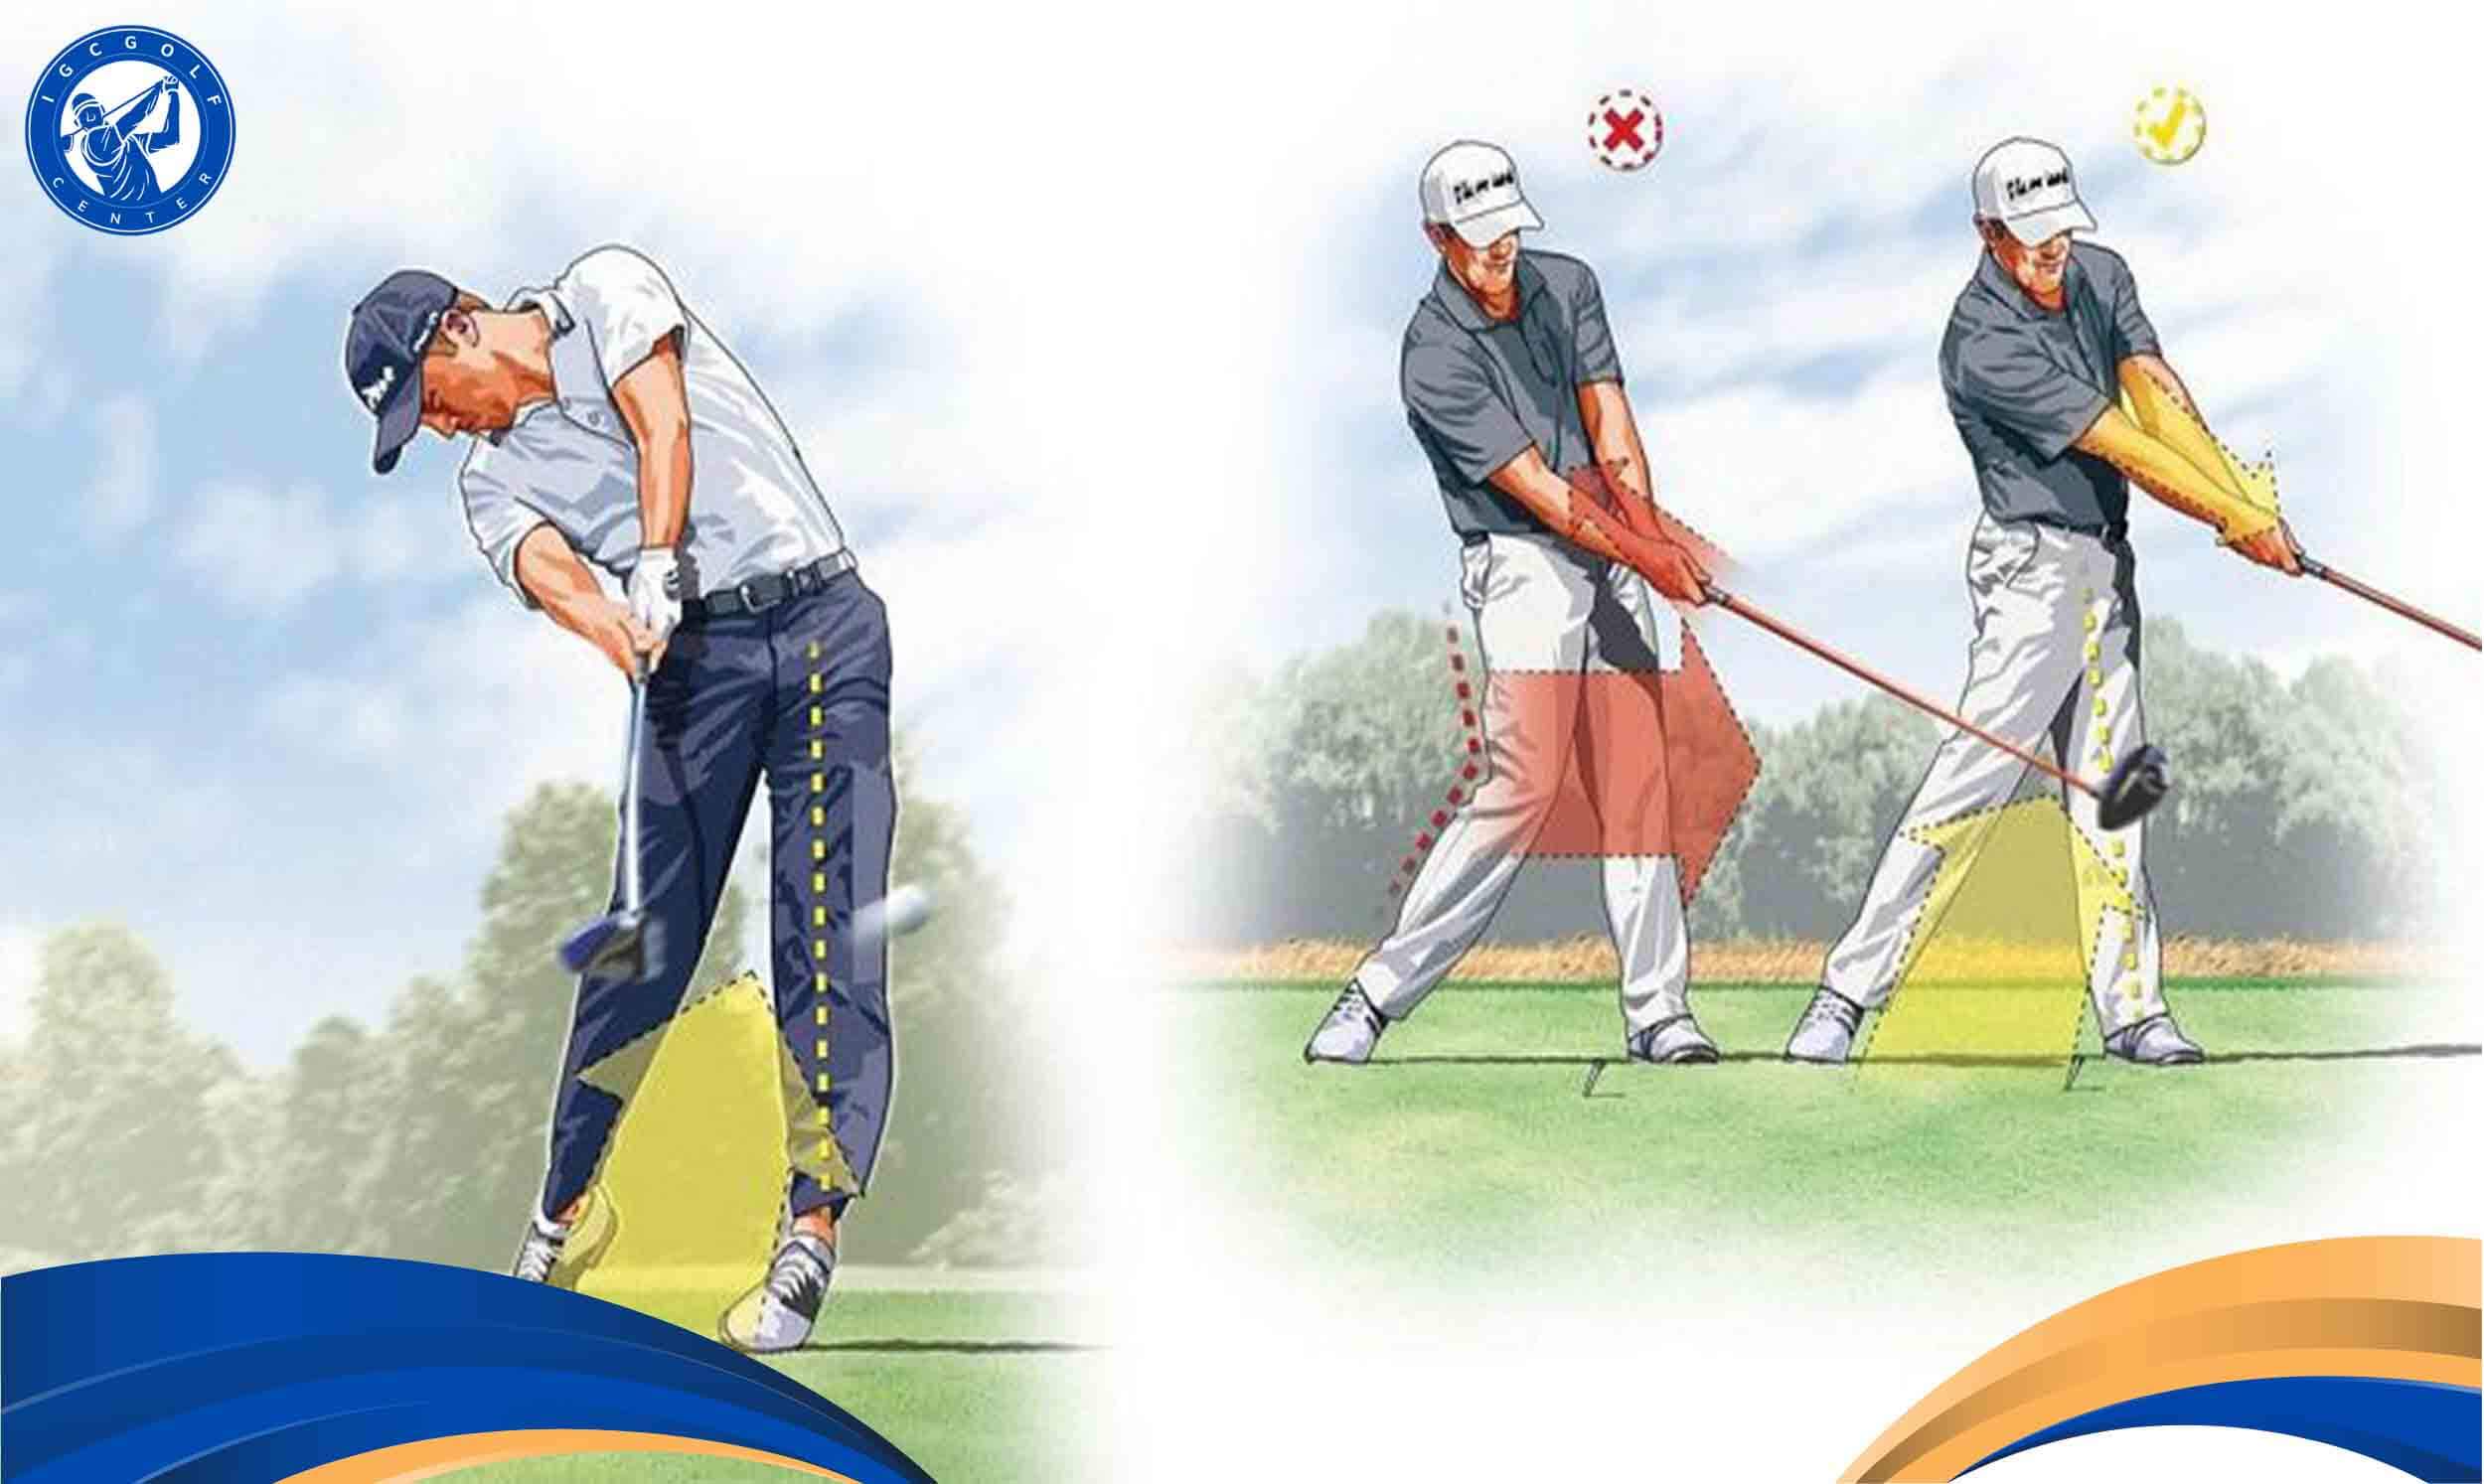 Thực hiện đúng động tác để chơi golf không bị đau lưng